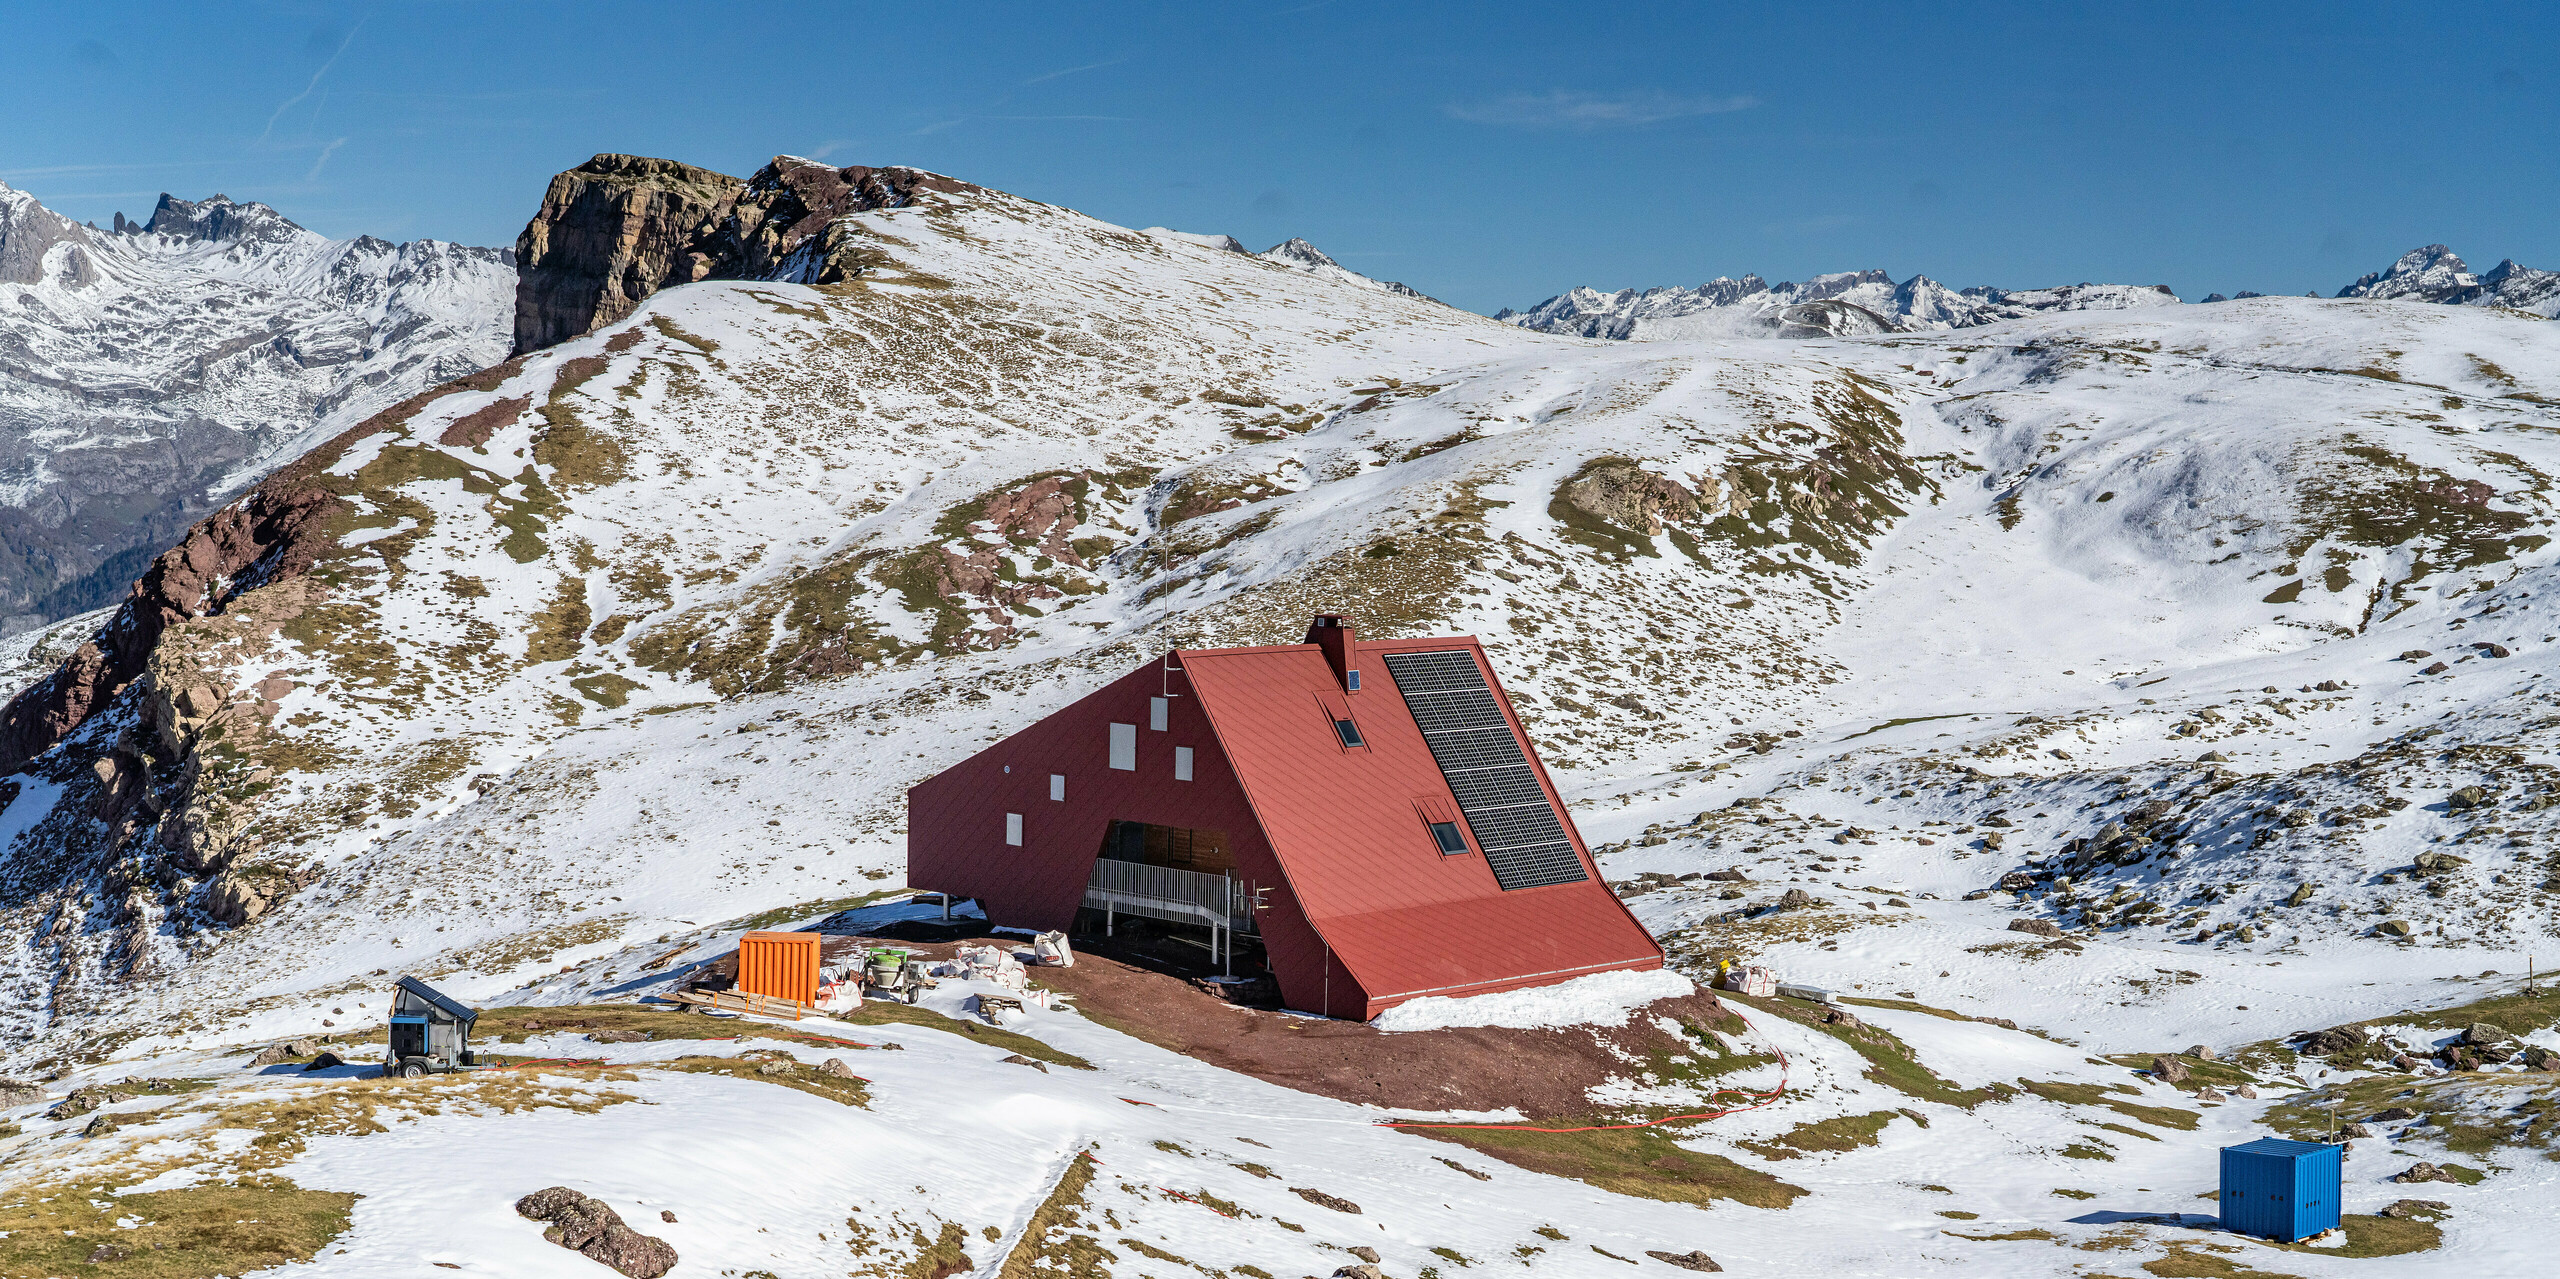 Vogelperspektive auf Schutzhütte Arlet im Pyrenäen-Nationalpark mit schneebedeckter Berglandschaft rund um das oxydrote Gebäude mit einem Dach und einer Fassade aus Aluminium